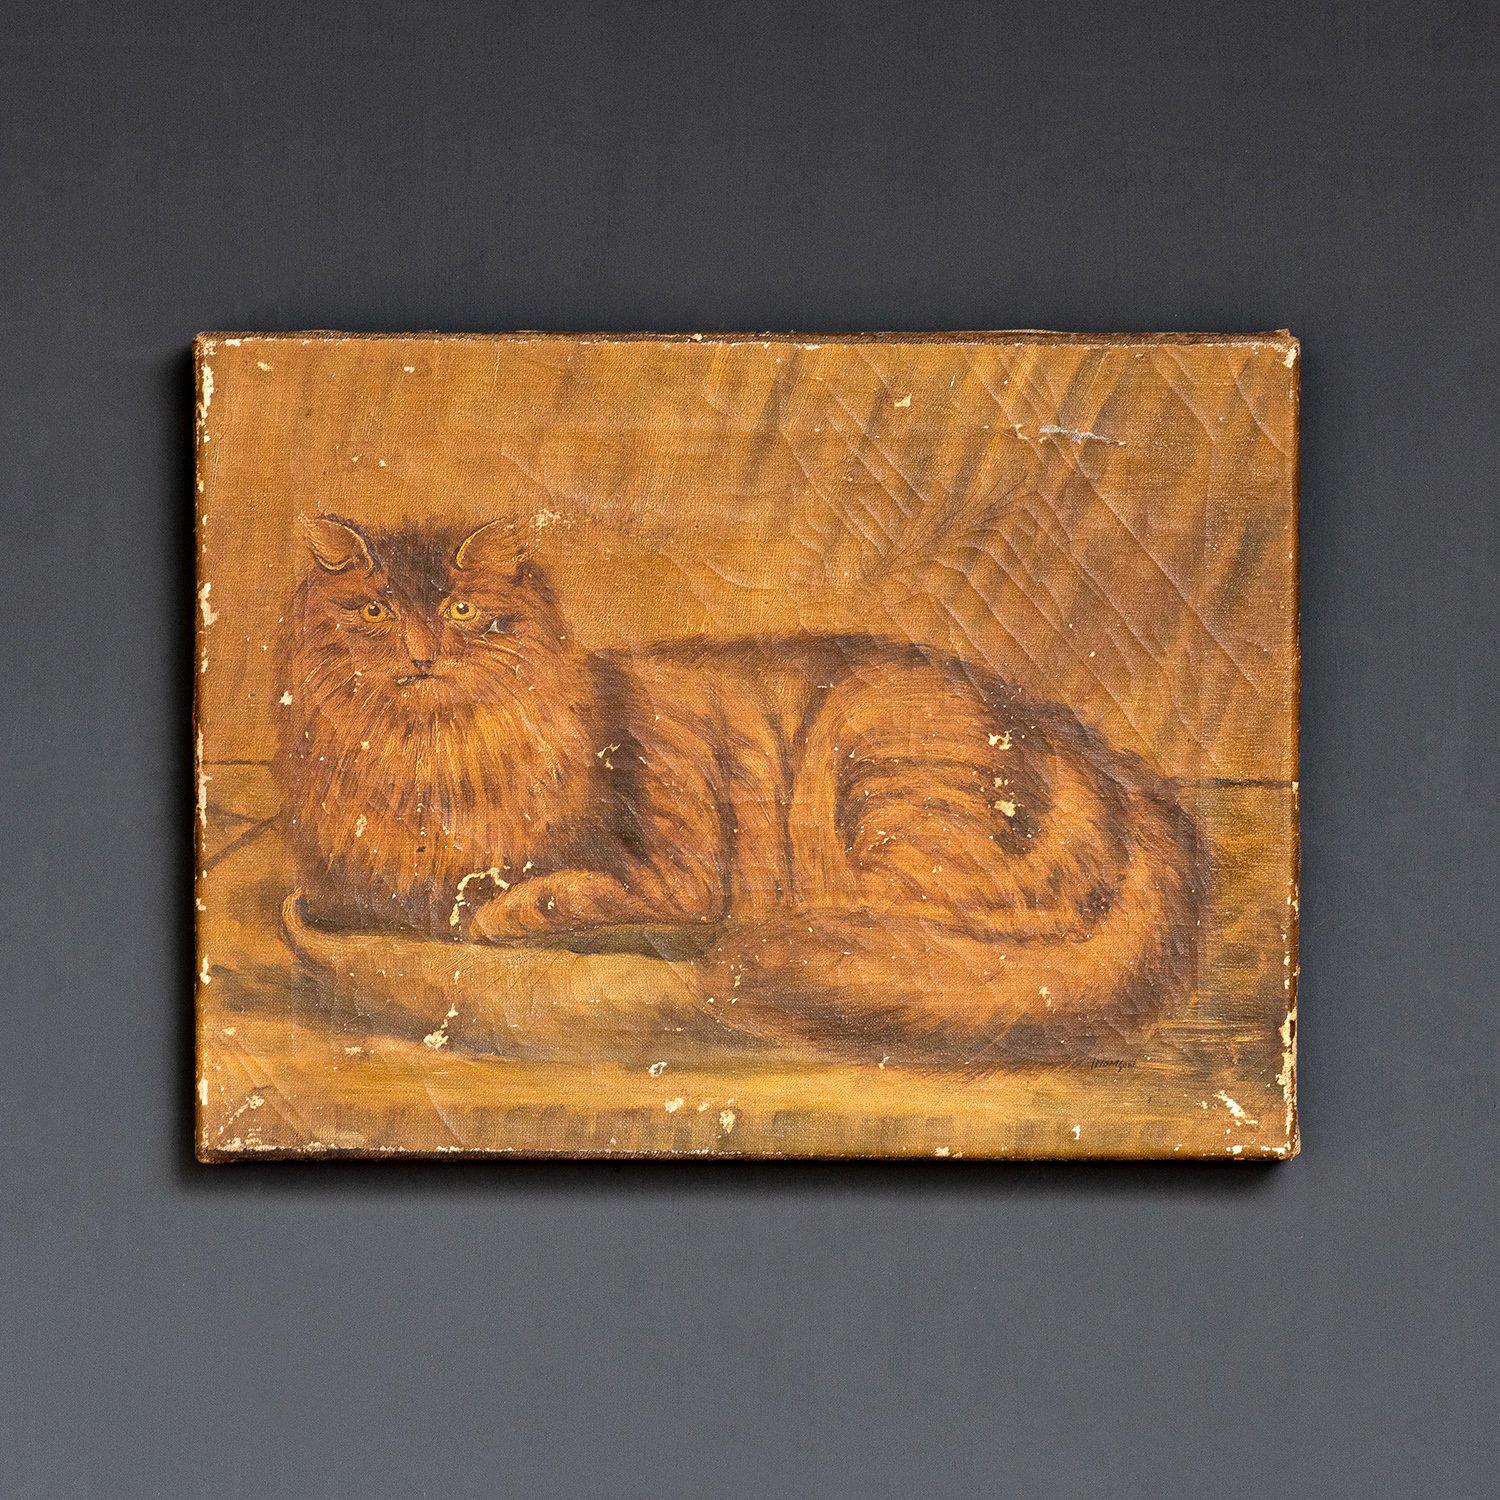 Antikes Original-Ölgemälde.
Eine charmante Studie einer flauschigen Katze, die sich zusammengerollt hat und Sie direkt anschaut.
 
Gemalt im naiven Stil.
 
Wahrscheinlich aus dem frühen 19. Jahrhundert.
 
Das Gemälde hat einige